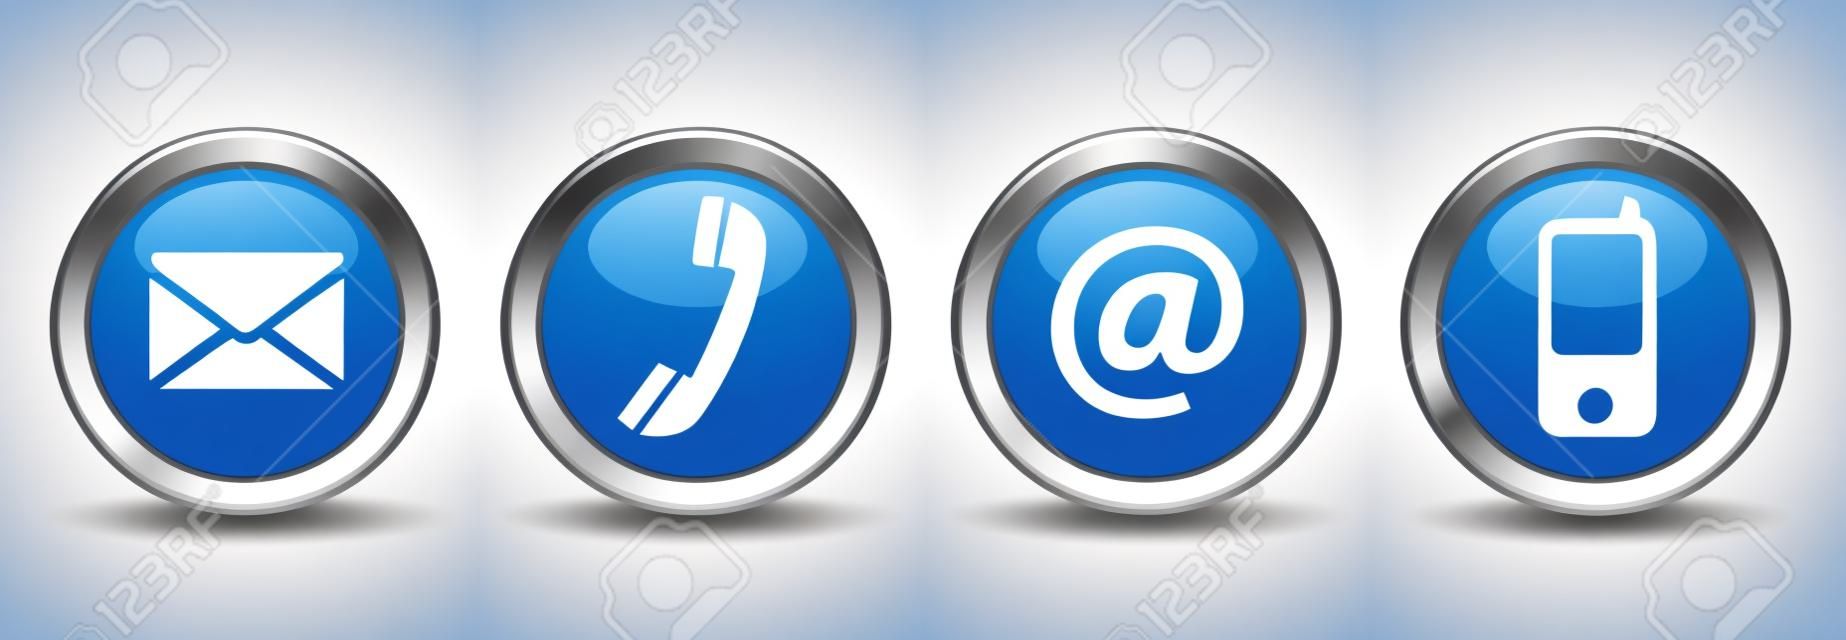 聯繫我們的網頁按鈕設置電子郵件，在電話和手機圖標上的藍銀徽章矢量EPS 10插圖隔絕在白色背景。